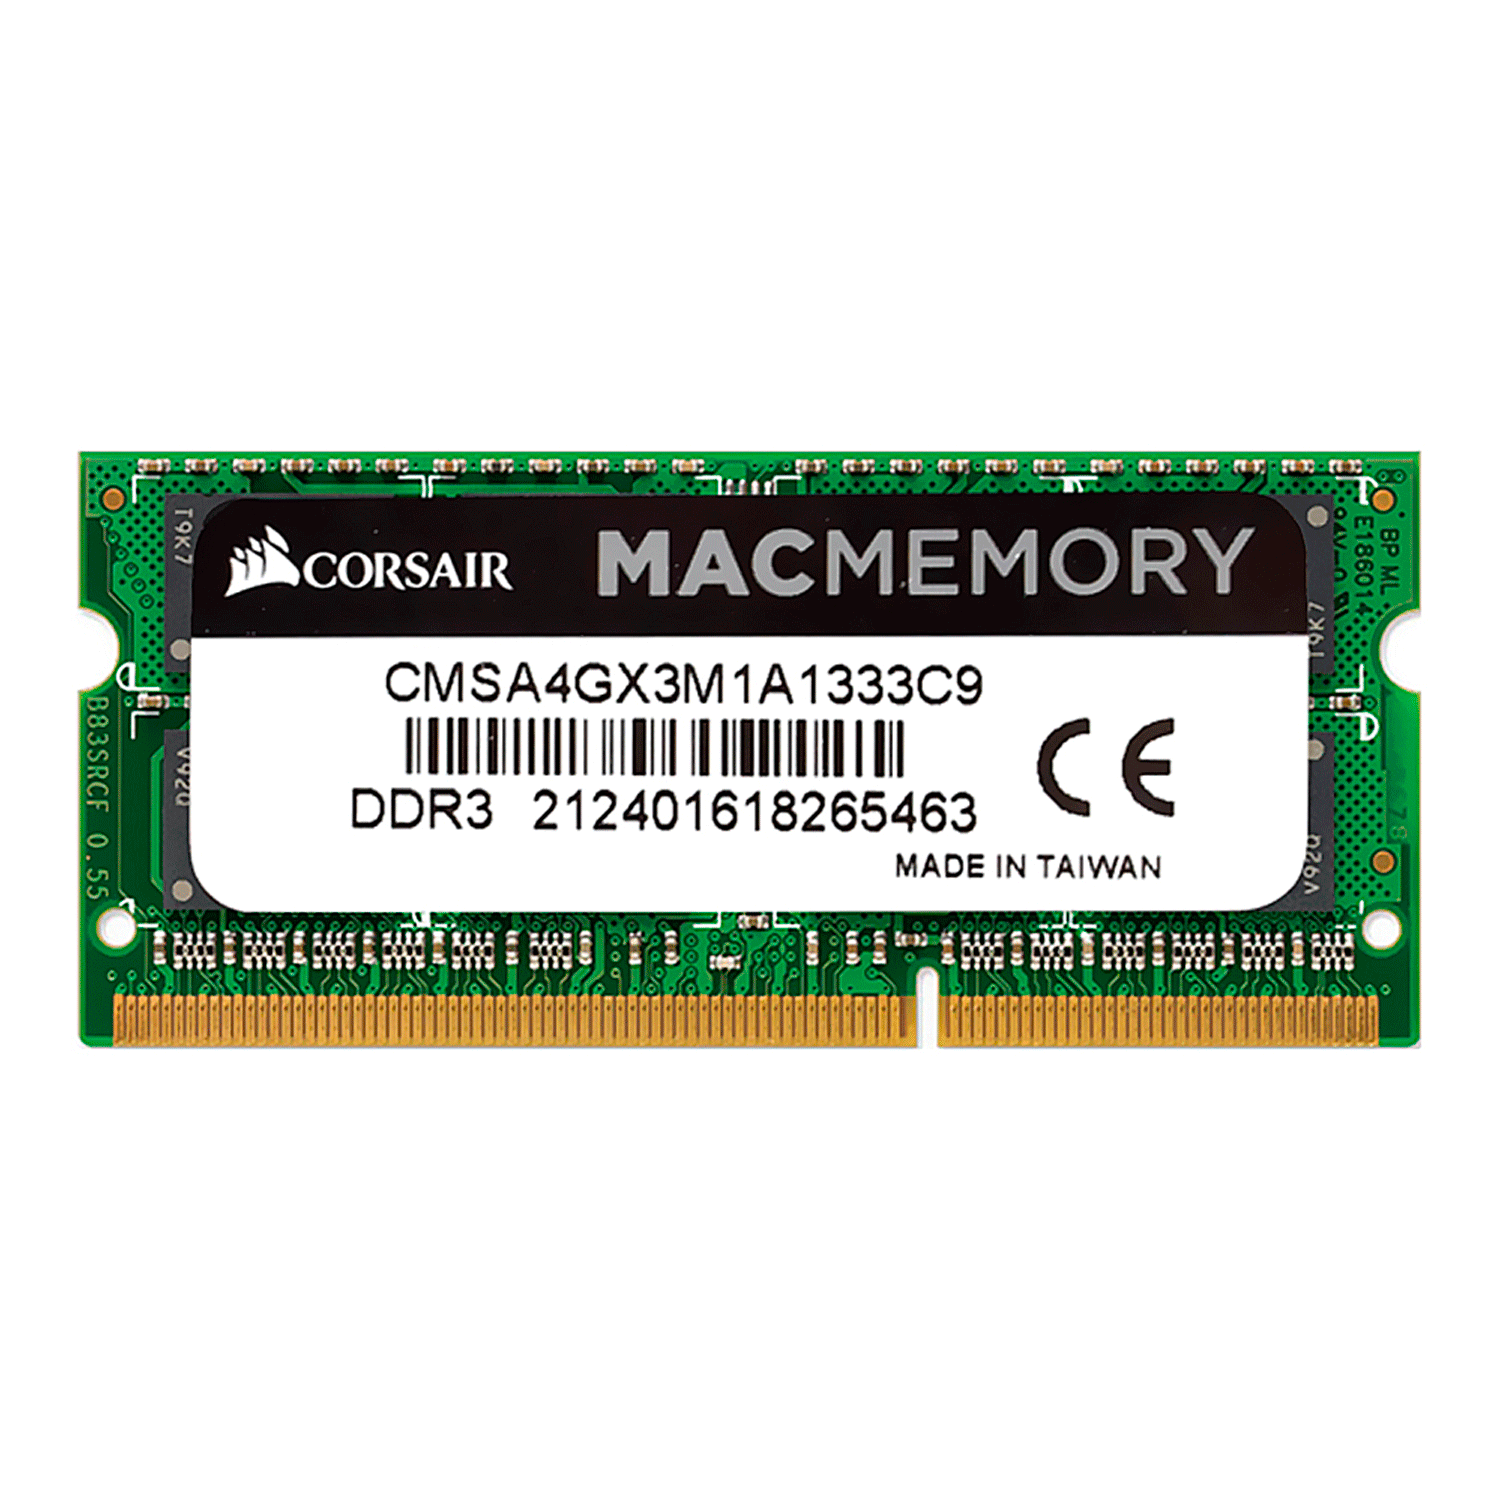 Memória RAM para Macbook Corsair 4GB / DDR3 / 1333MHZ - (CMSA4GX3M1A1333C9)